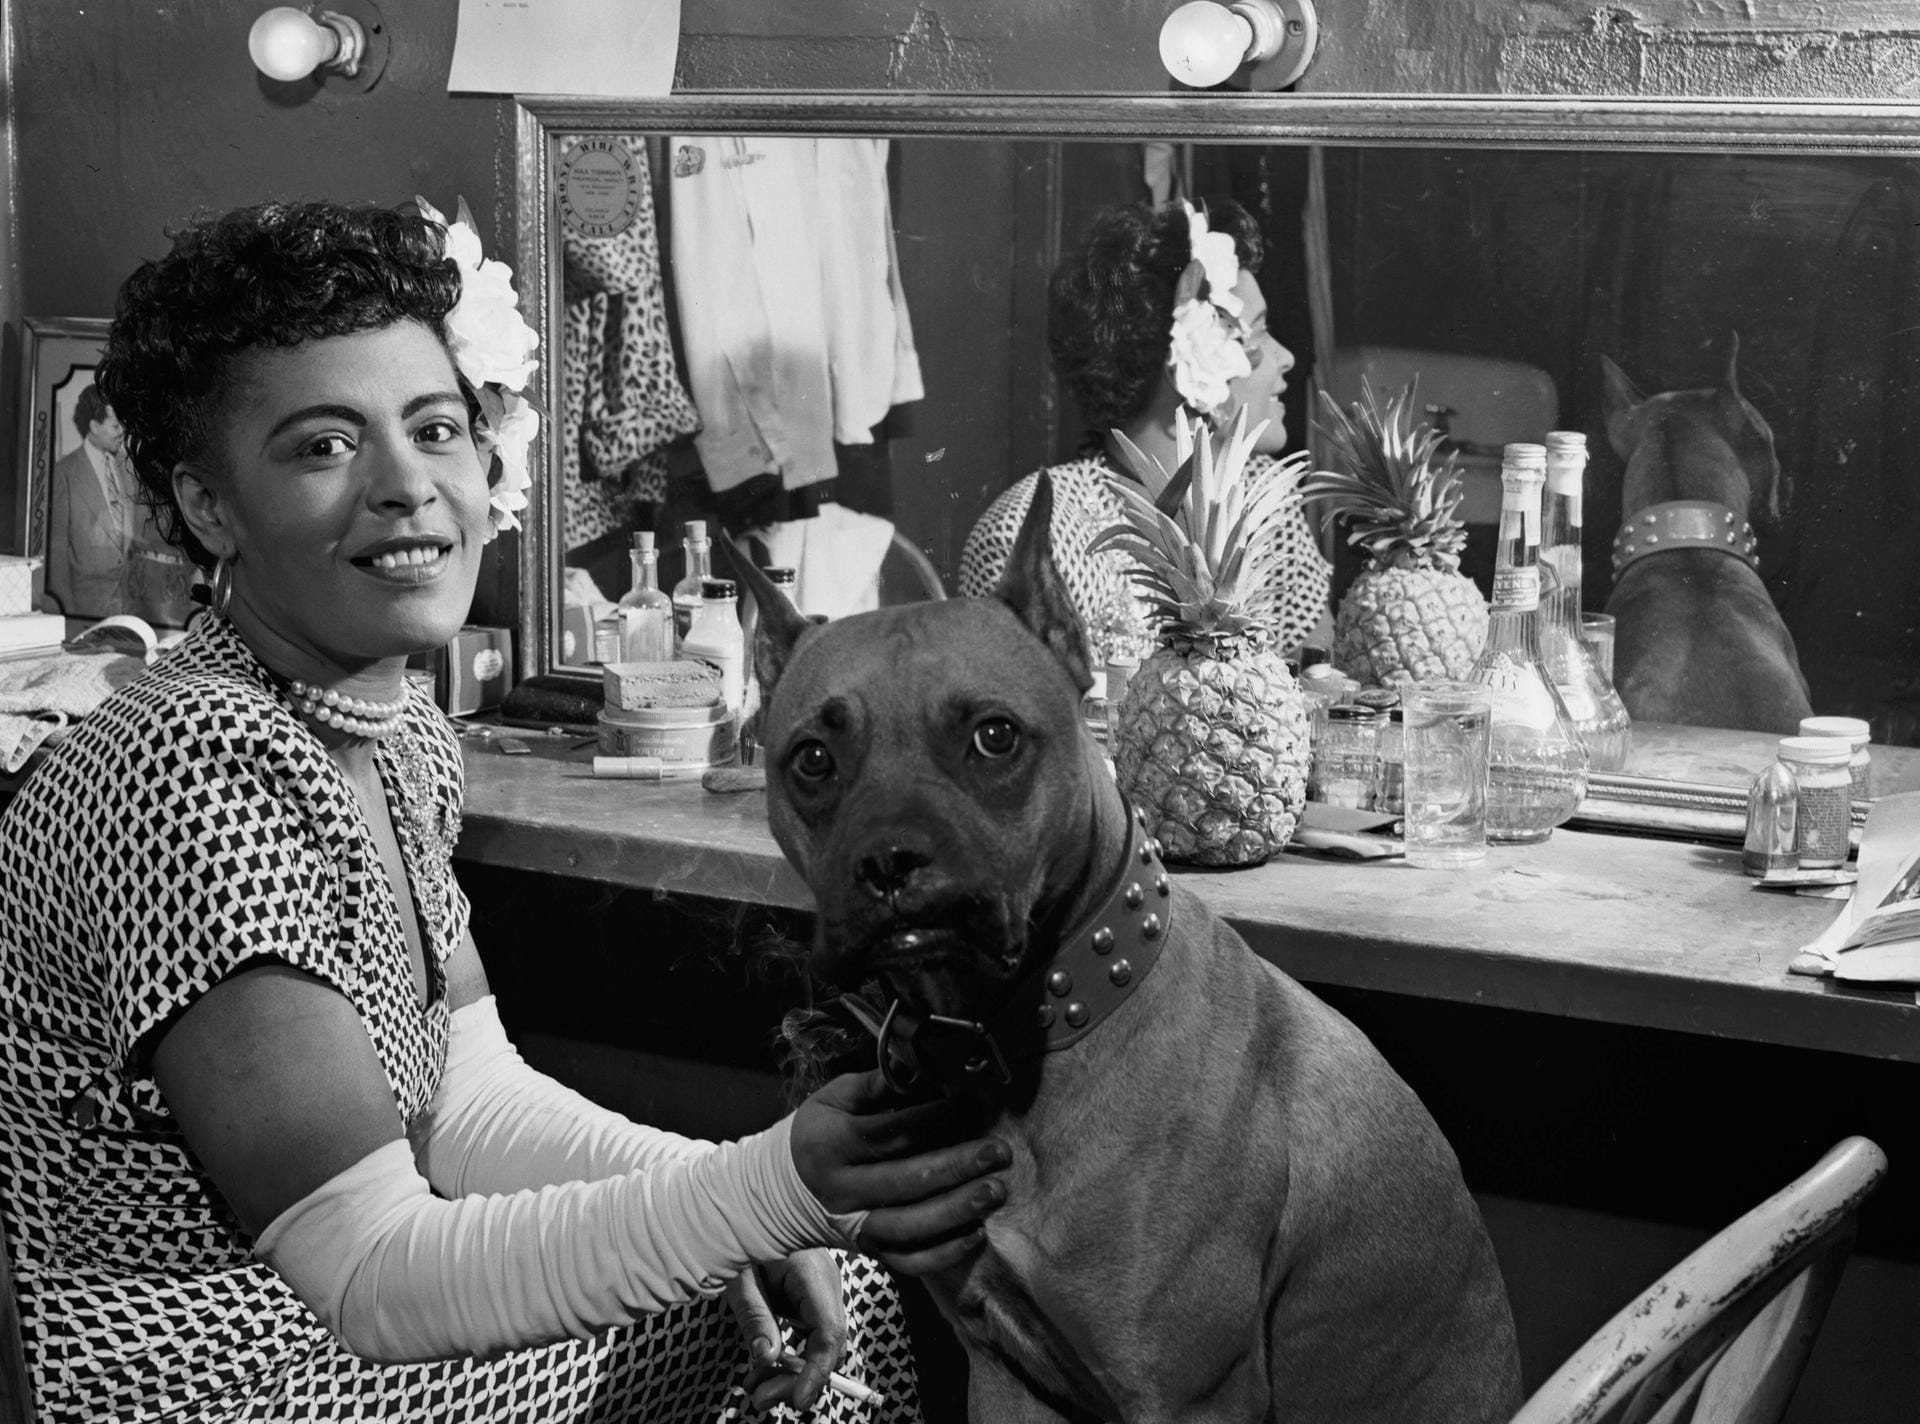 Billie Holiday: Sie war eine der bedeutendsten US-amerikanischen Jazzsängerinnen. Sie hatte große Einflüsse auf die Entwicklung des Rock'n'Roll.